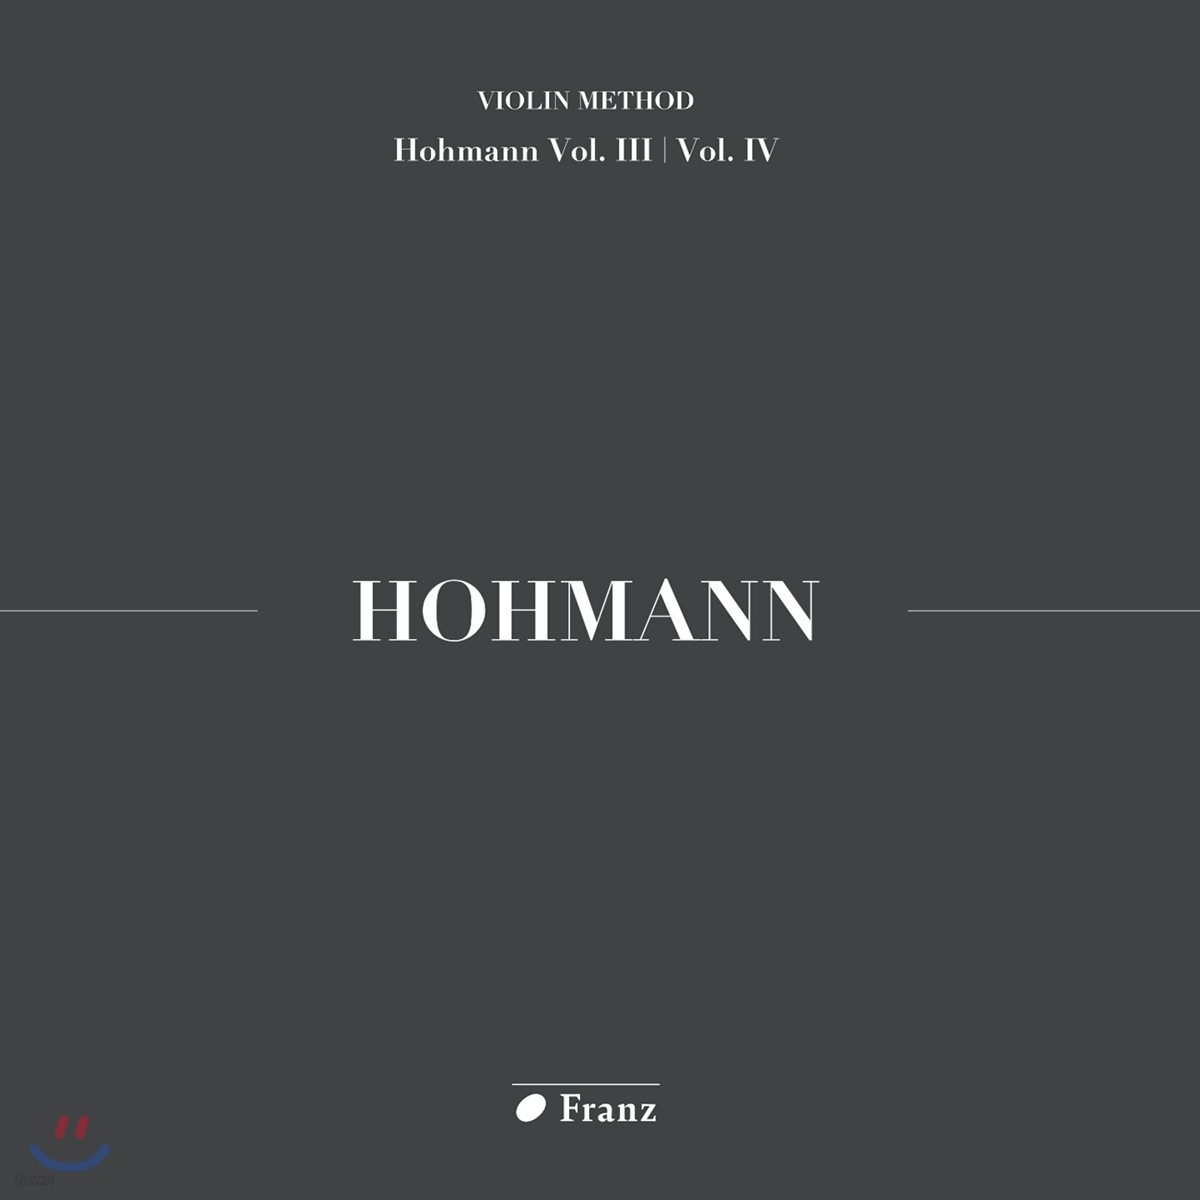 김수현 - 크리스티안 하인리히 호만: 바이올린 교본 3, 4권 연주집 (Christian Heinrich Hohmann: Violin Method Homann Vol.III / Vol. IV)